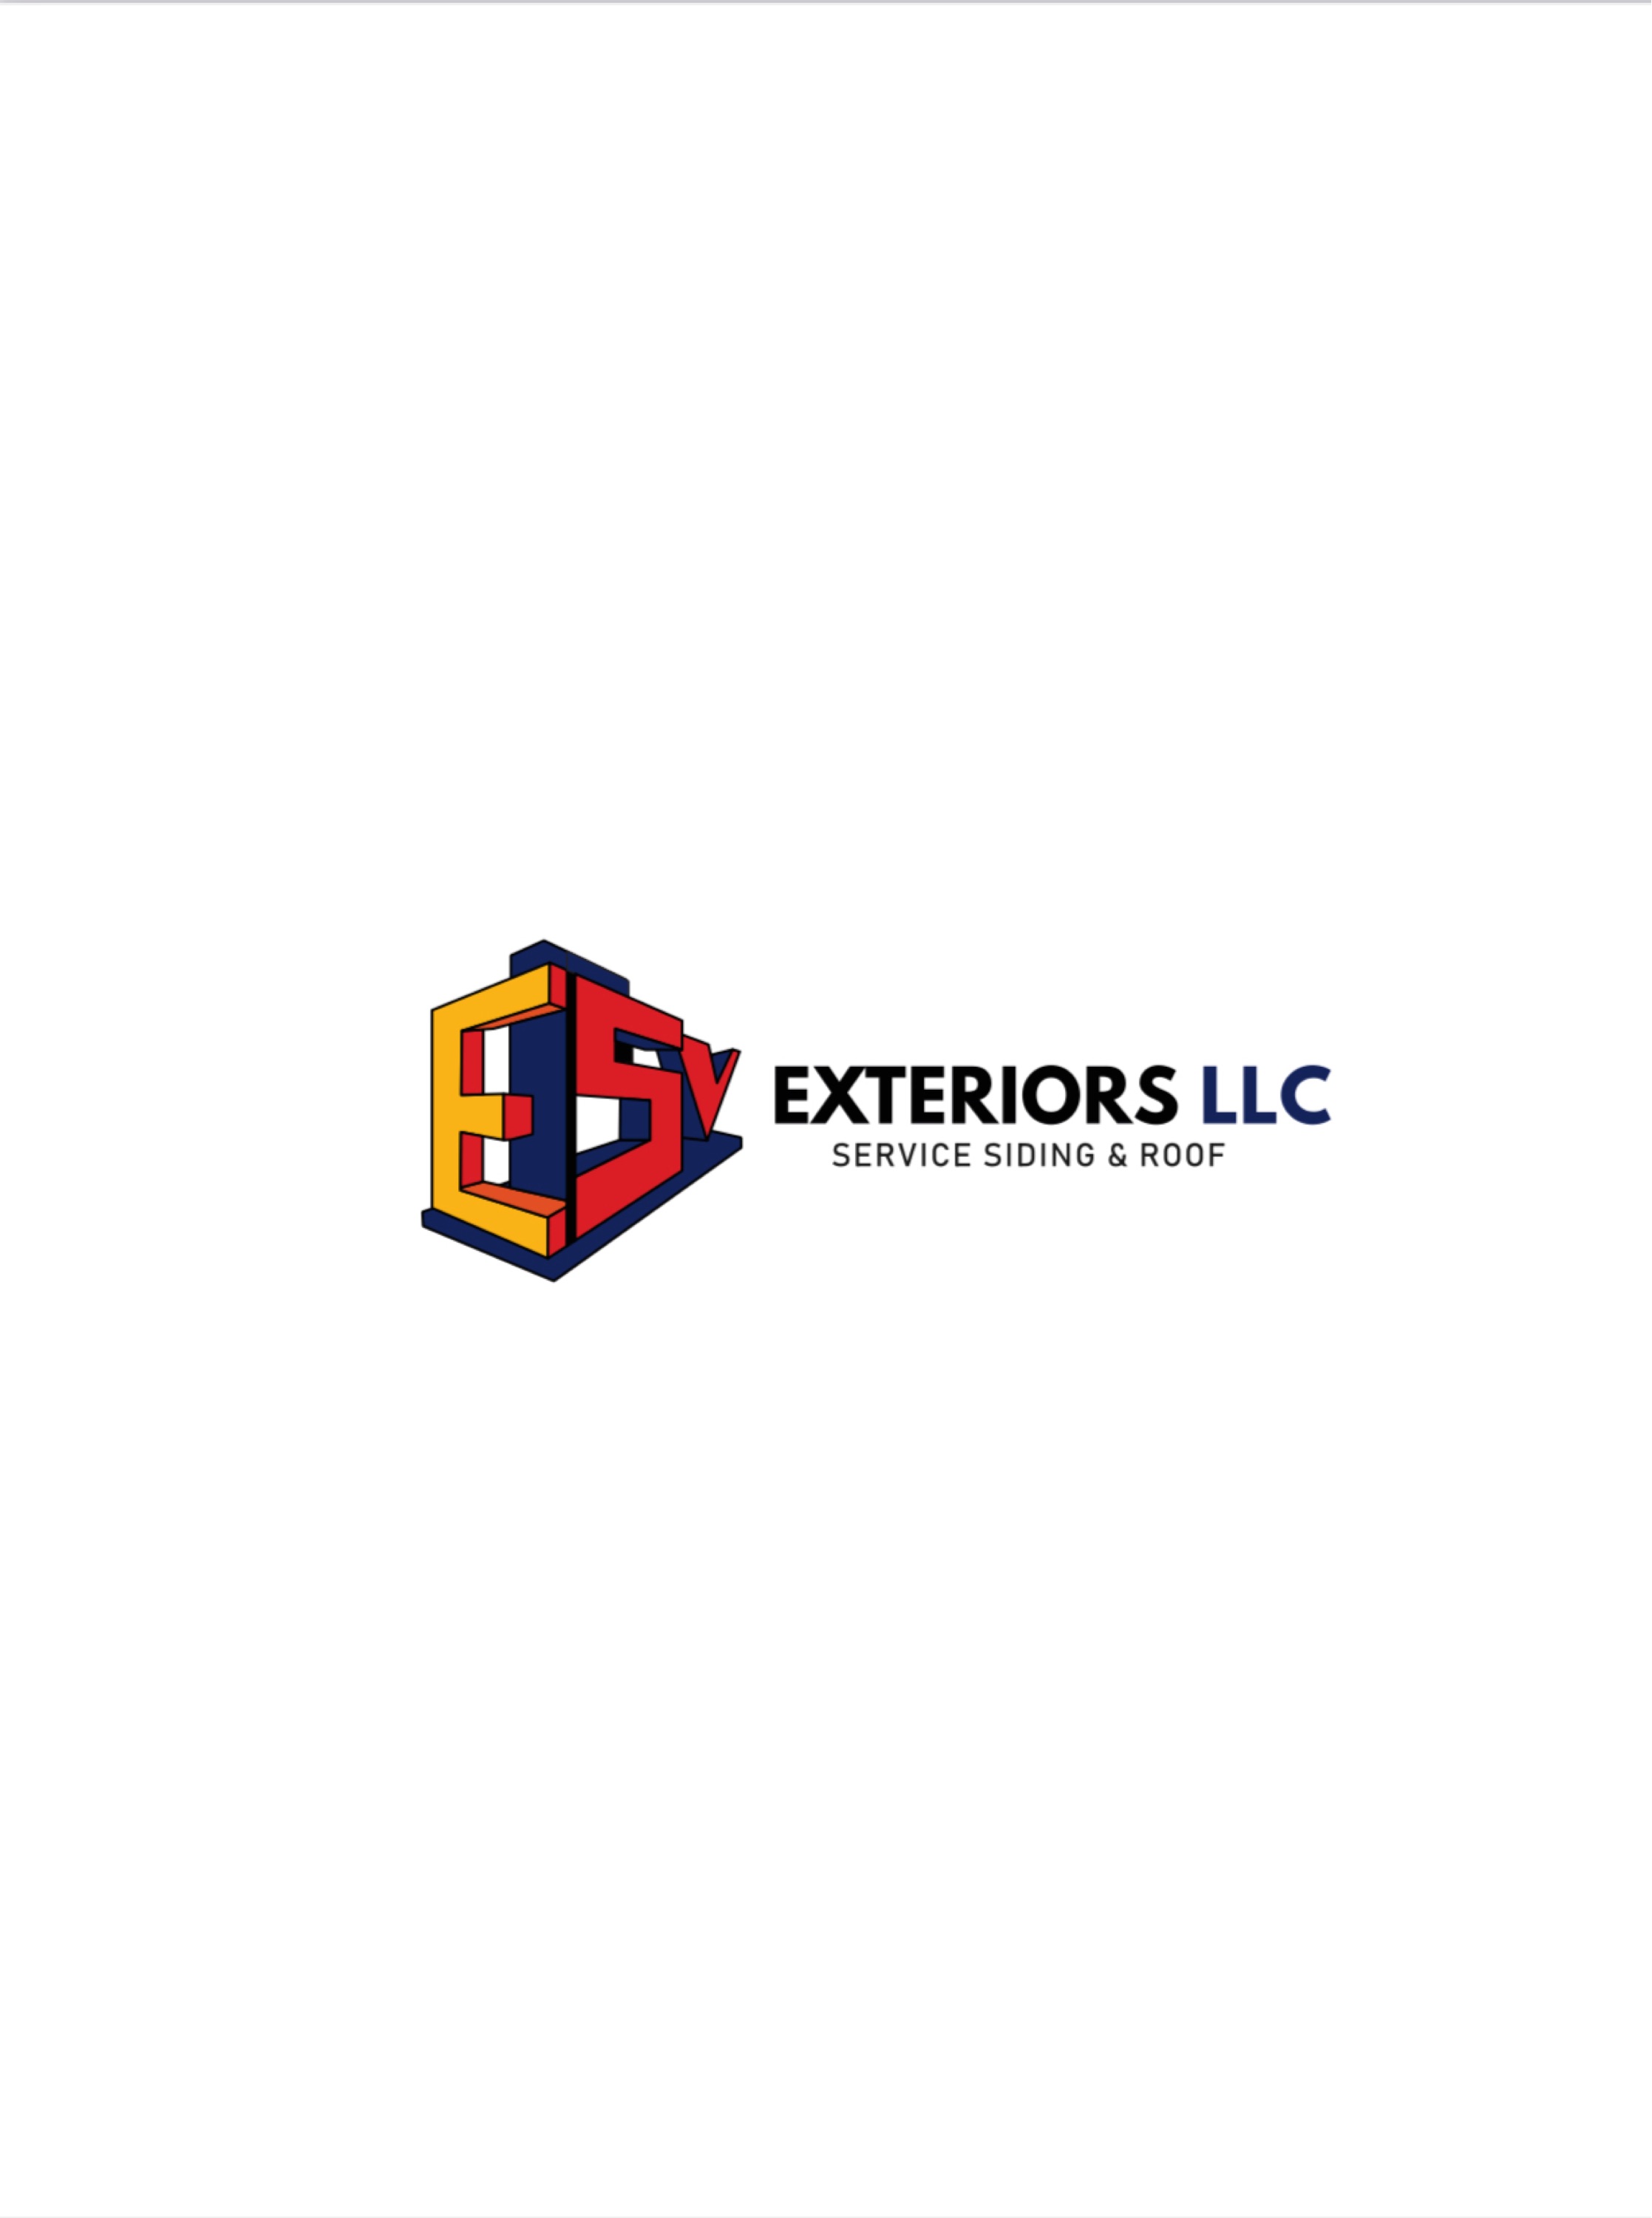 ESV Exteriors LLC Logo